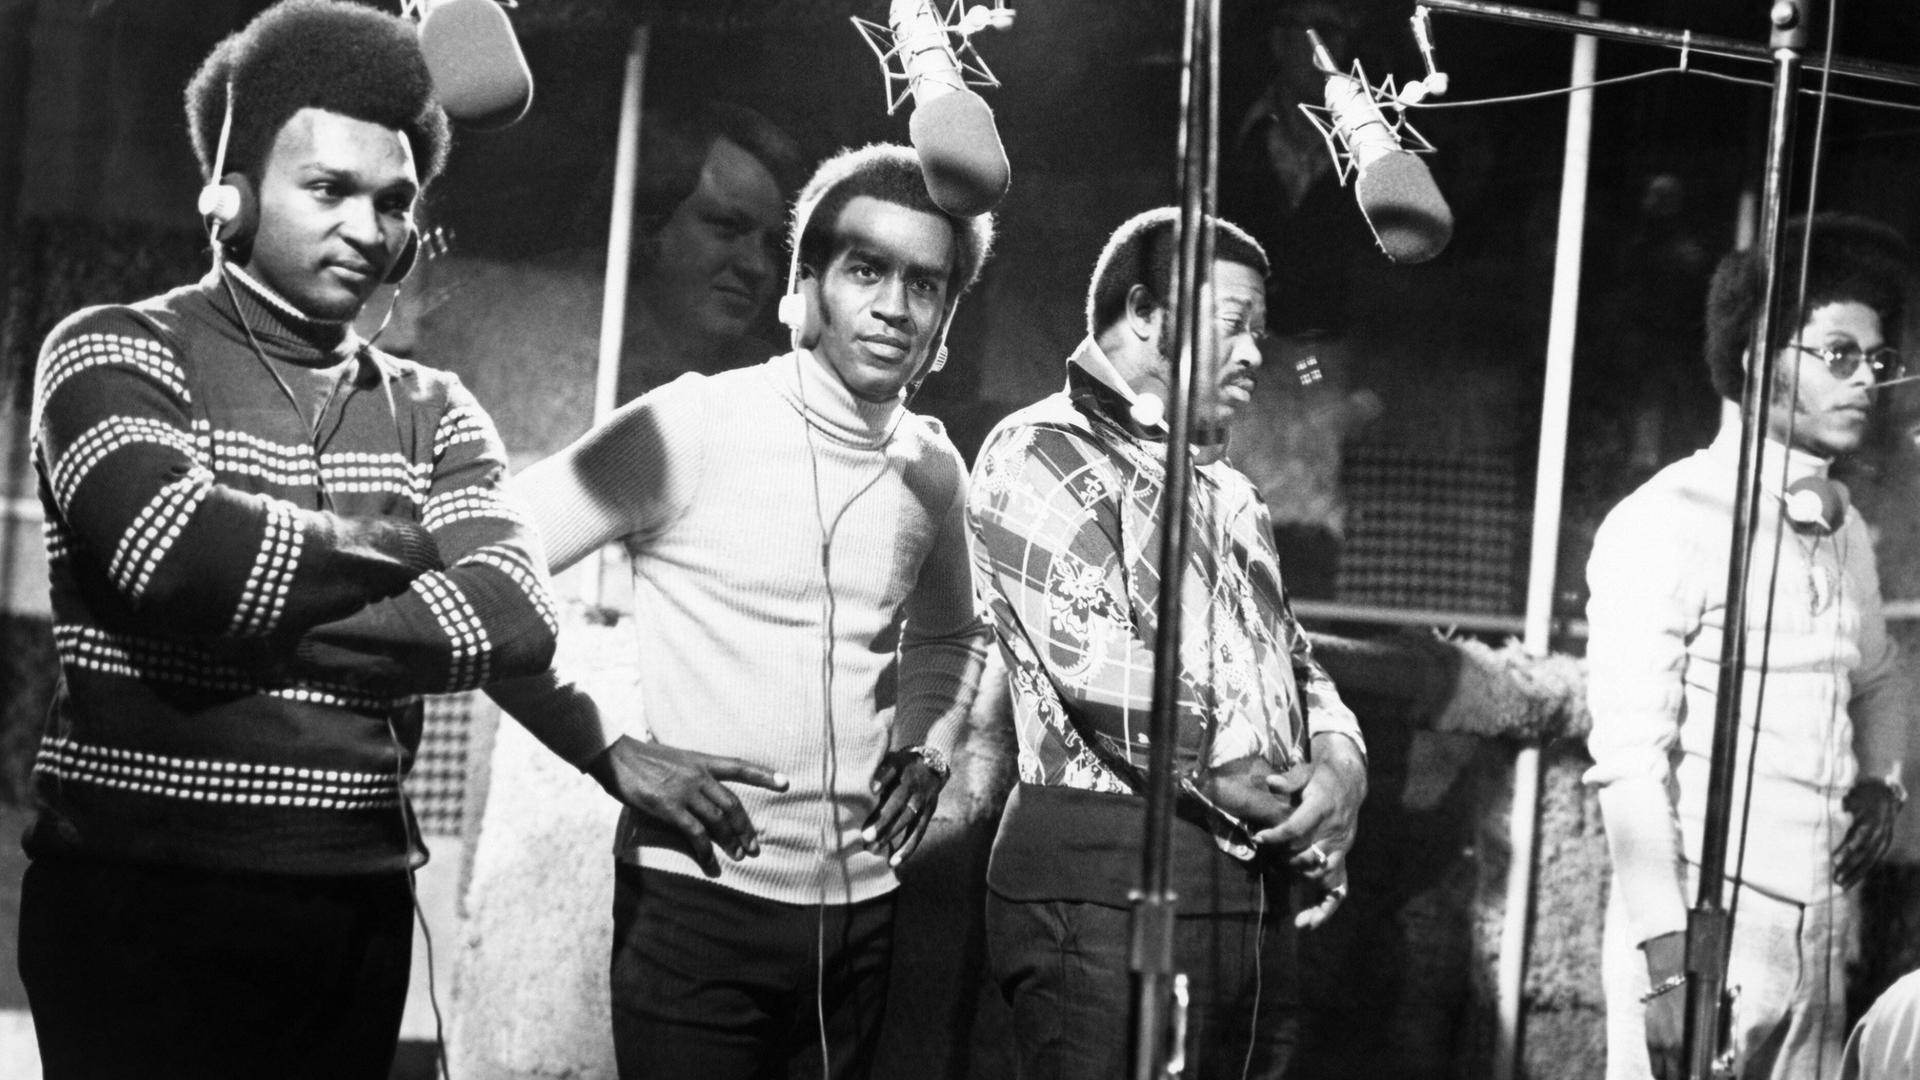 Schwarz-weiß-Foto der Band The Impressions. Vier Männer mit Kopfhörern stehen in einem Studio vor Mikrofoene.